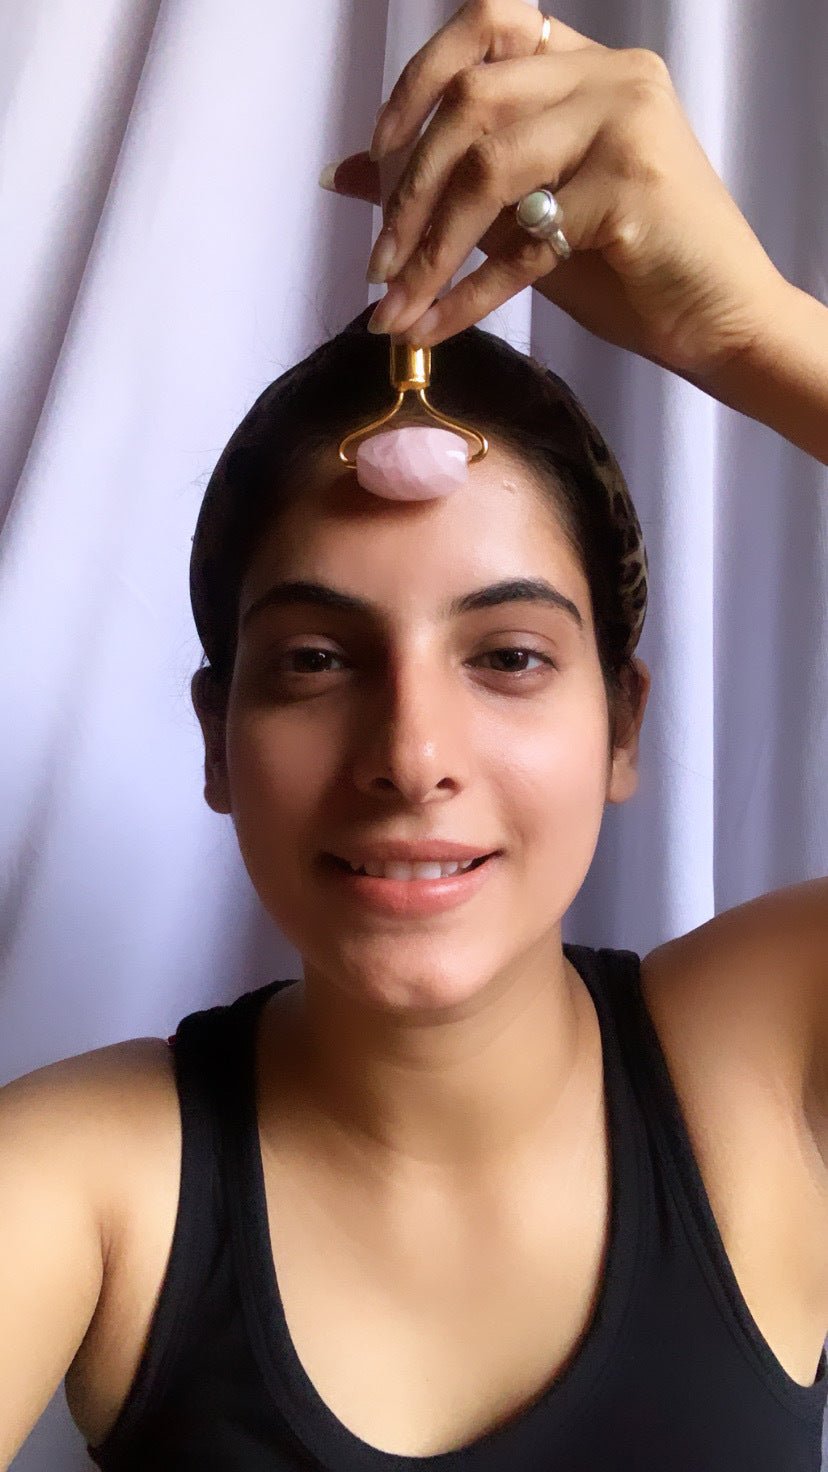 Crystal Facial Massage Roller Kit AMETHYST